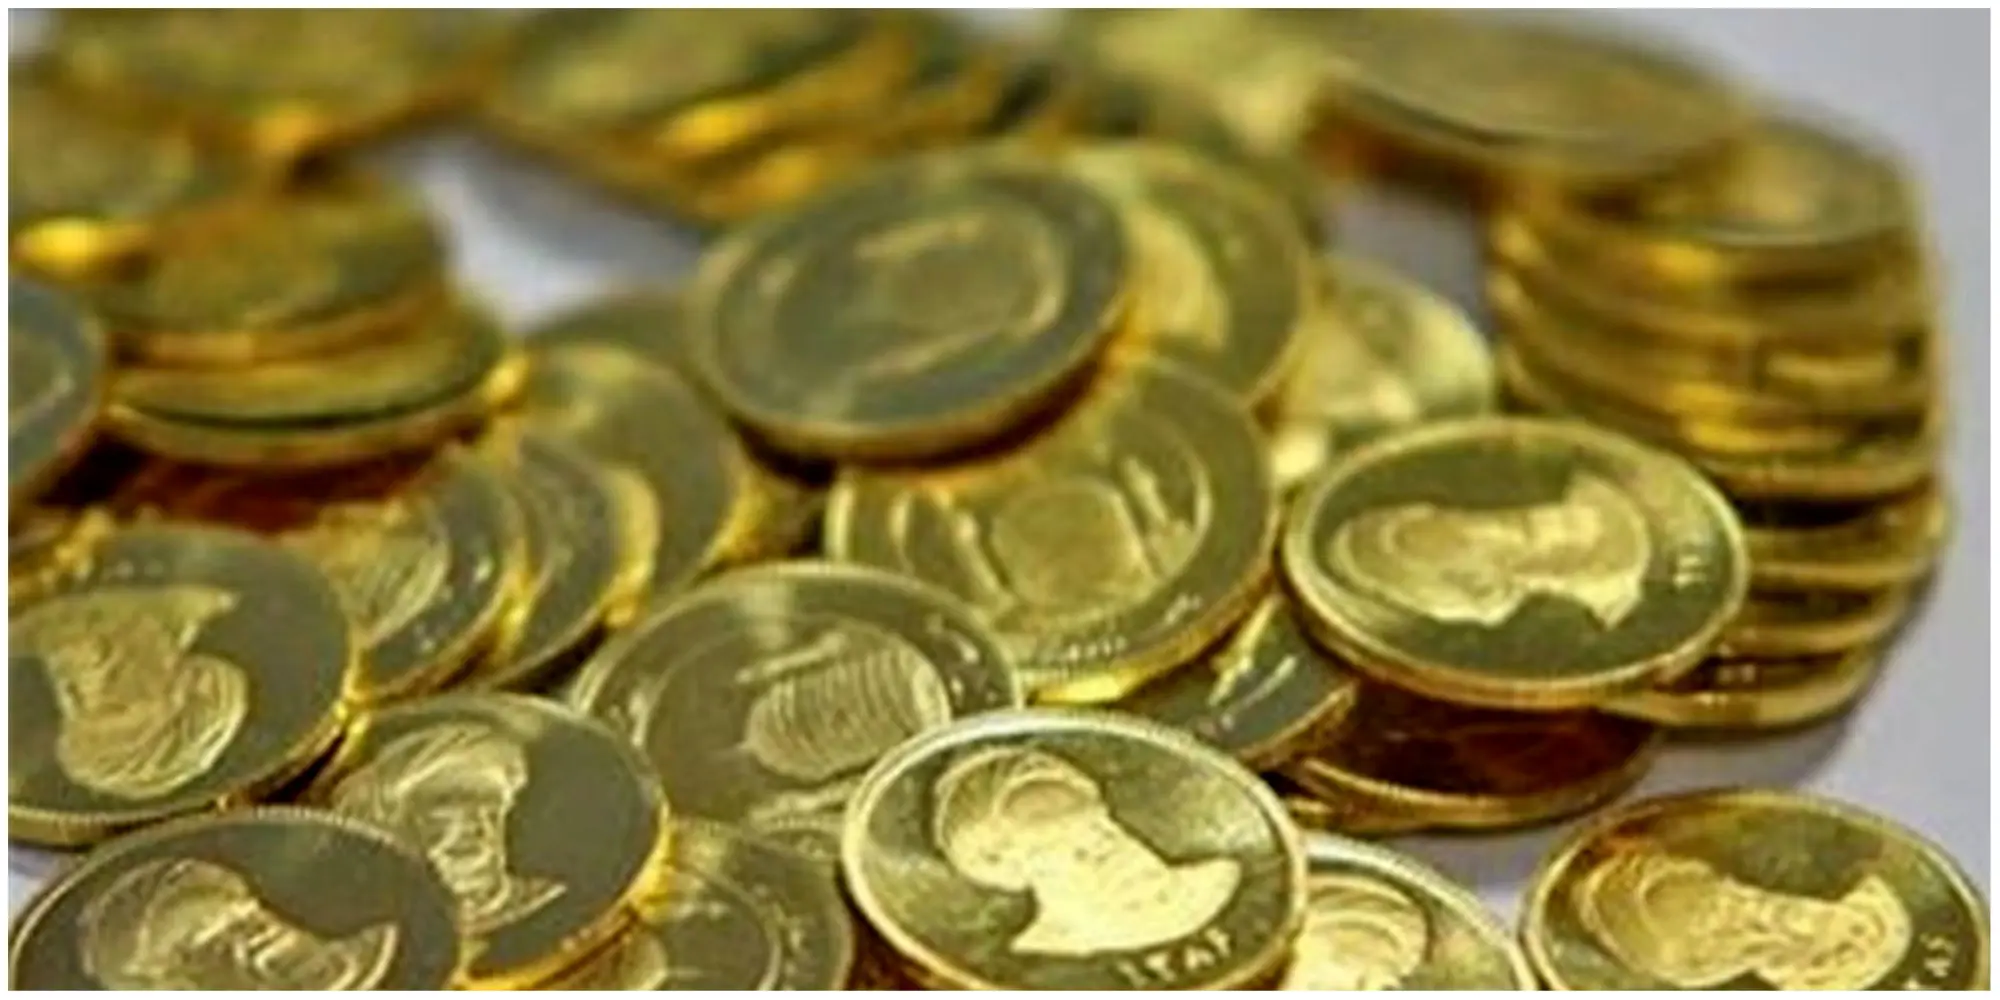 ساز مخالف طلا برای بازار سکه/پیش بینی قیمت سکه امروز

